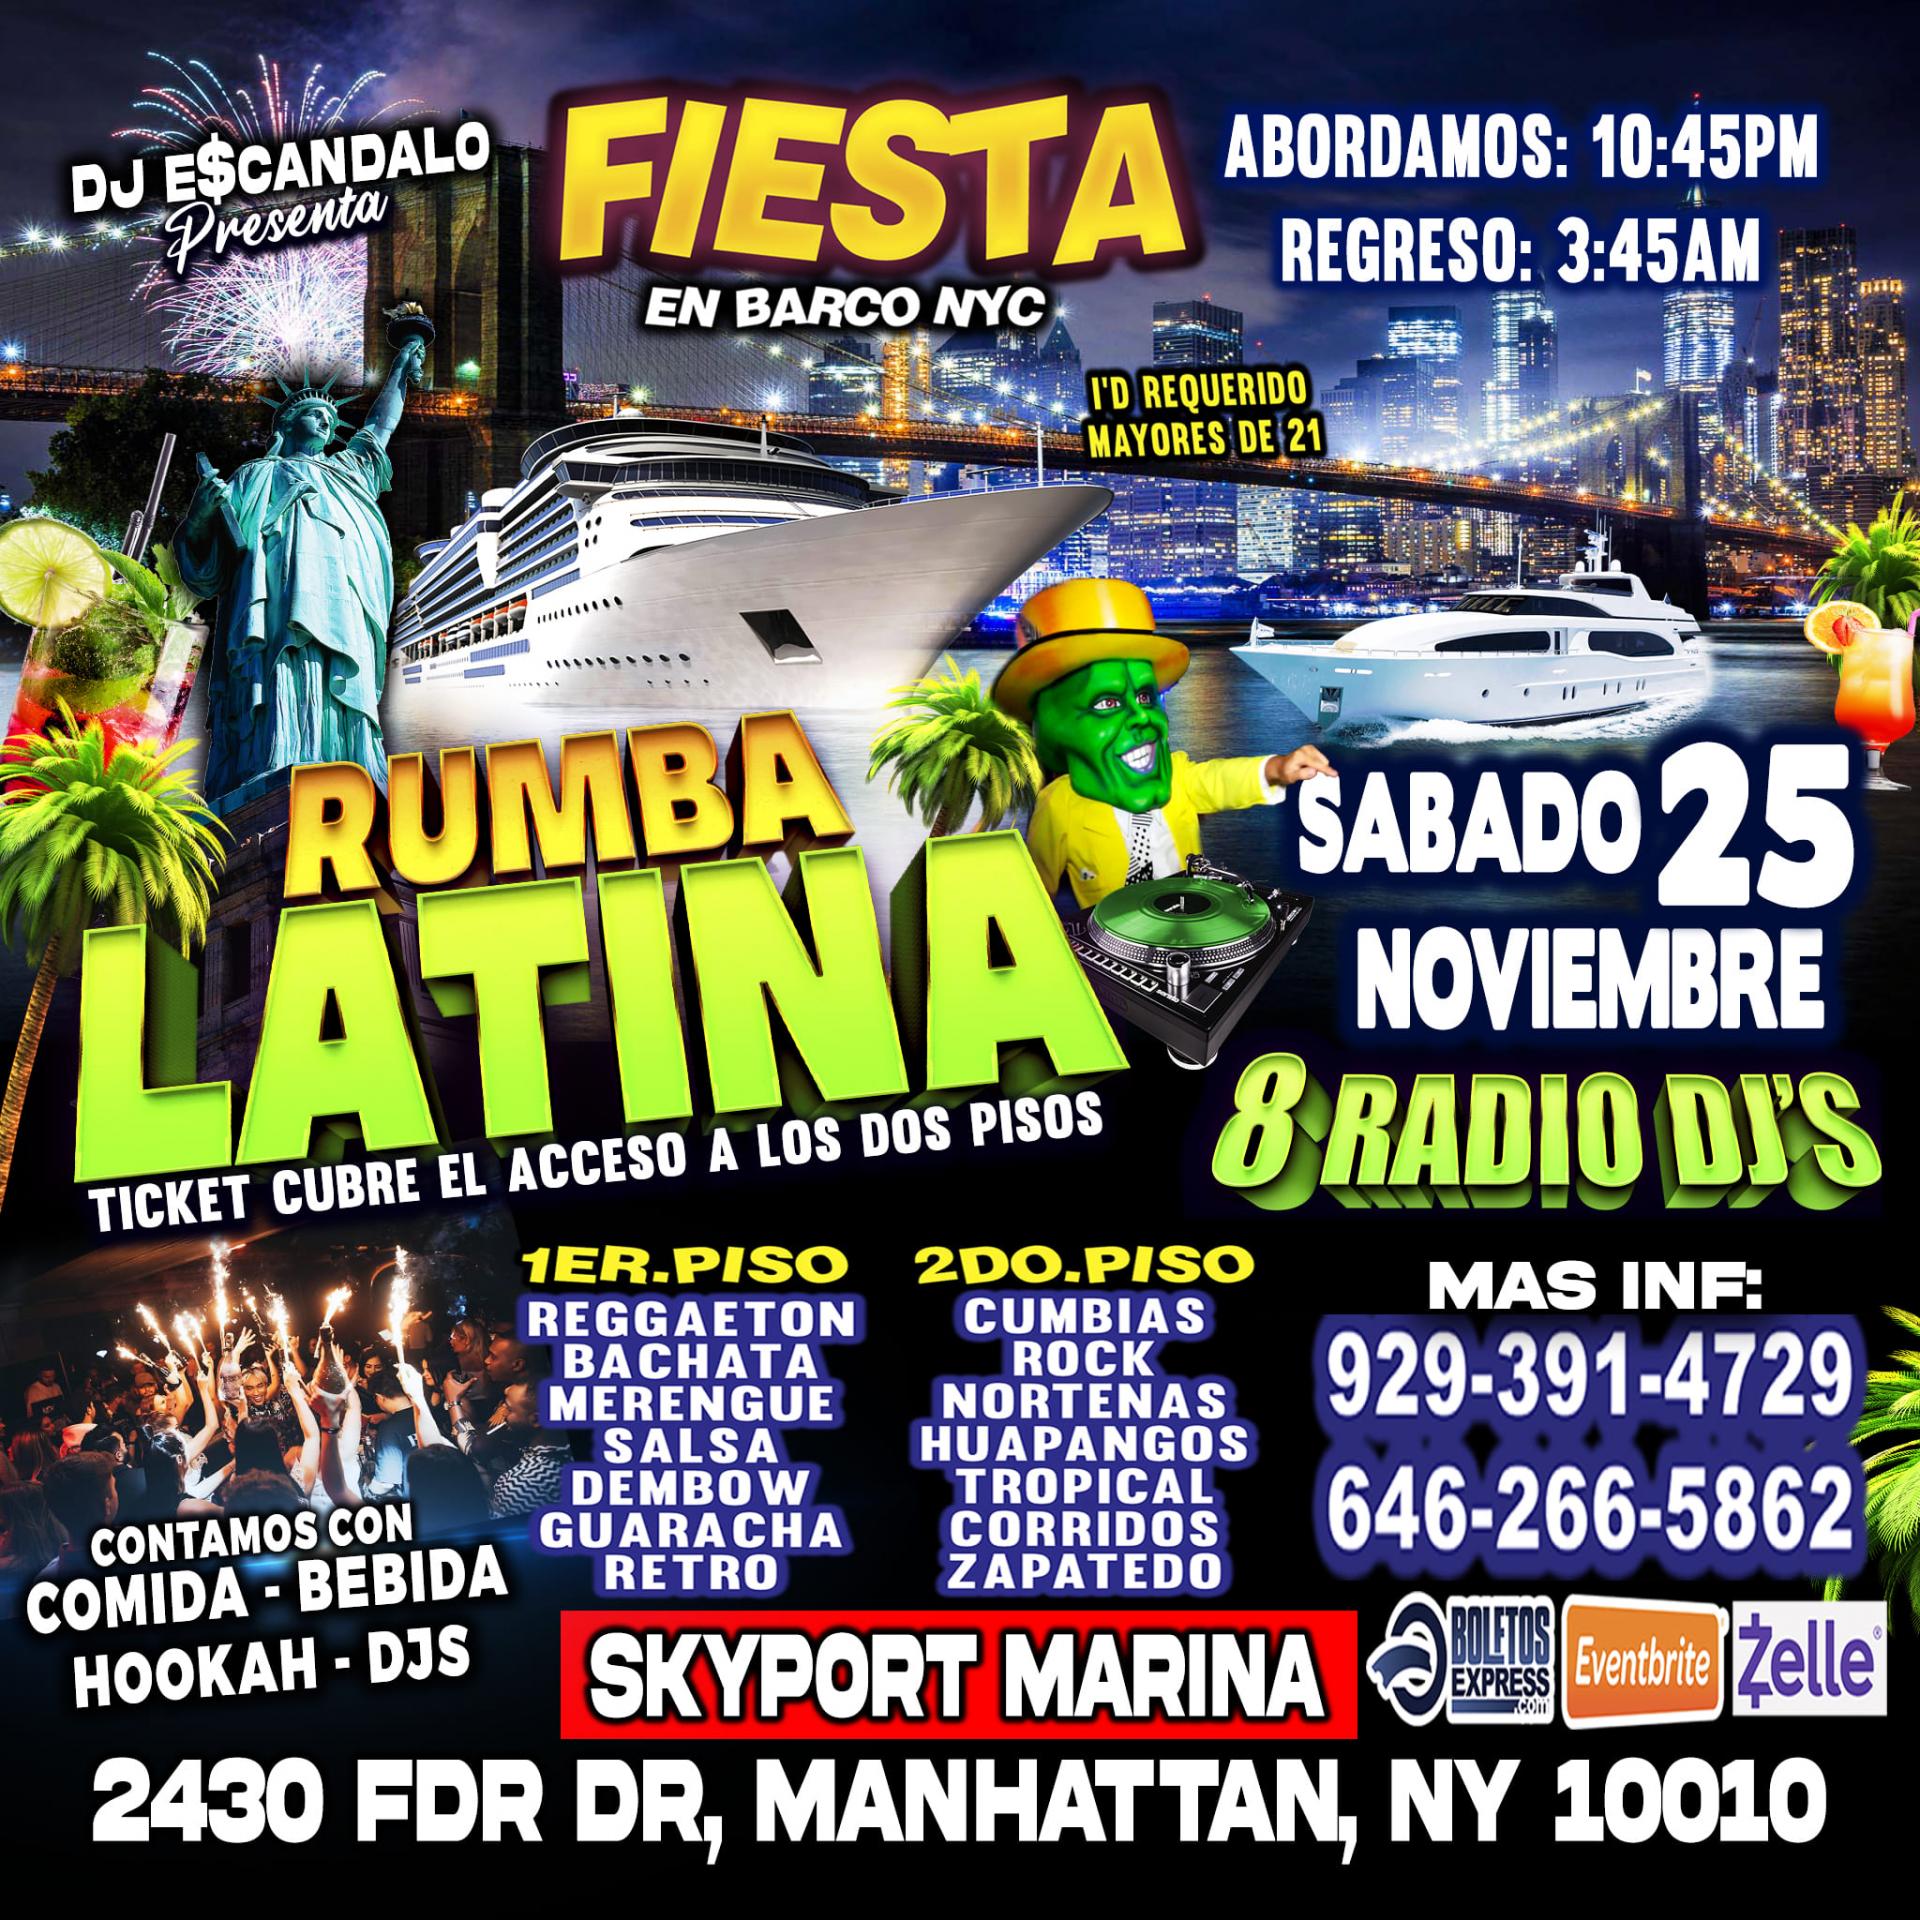 Sabado 25 Noviembre - Manhattan Ny - Rumba Latina En Barco + Dj's